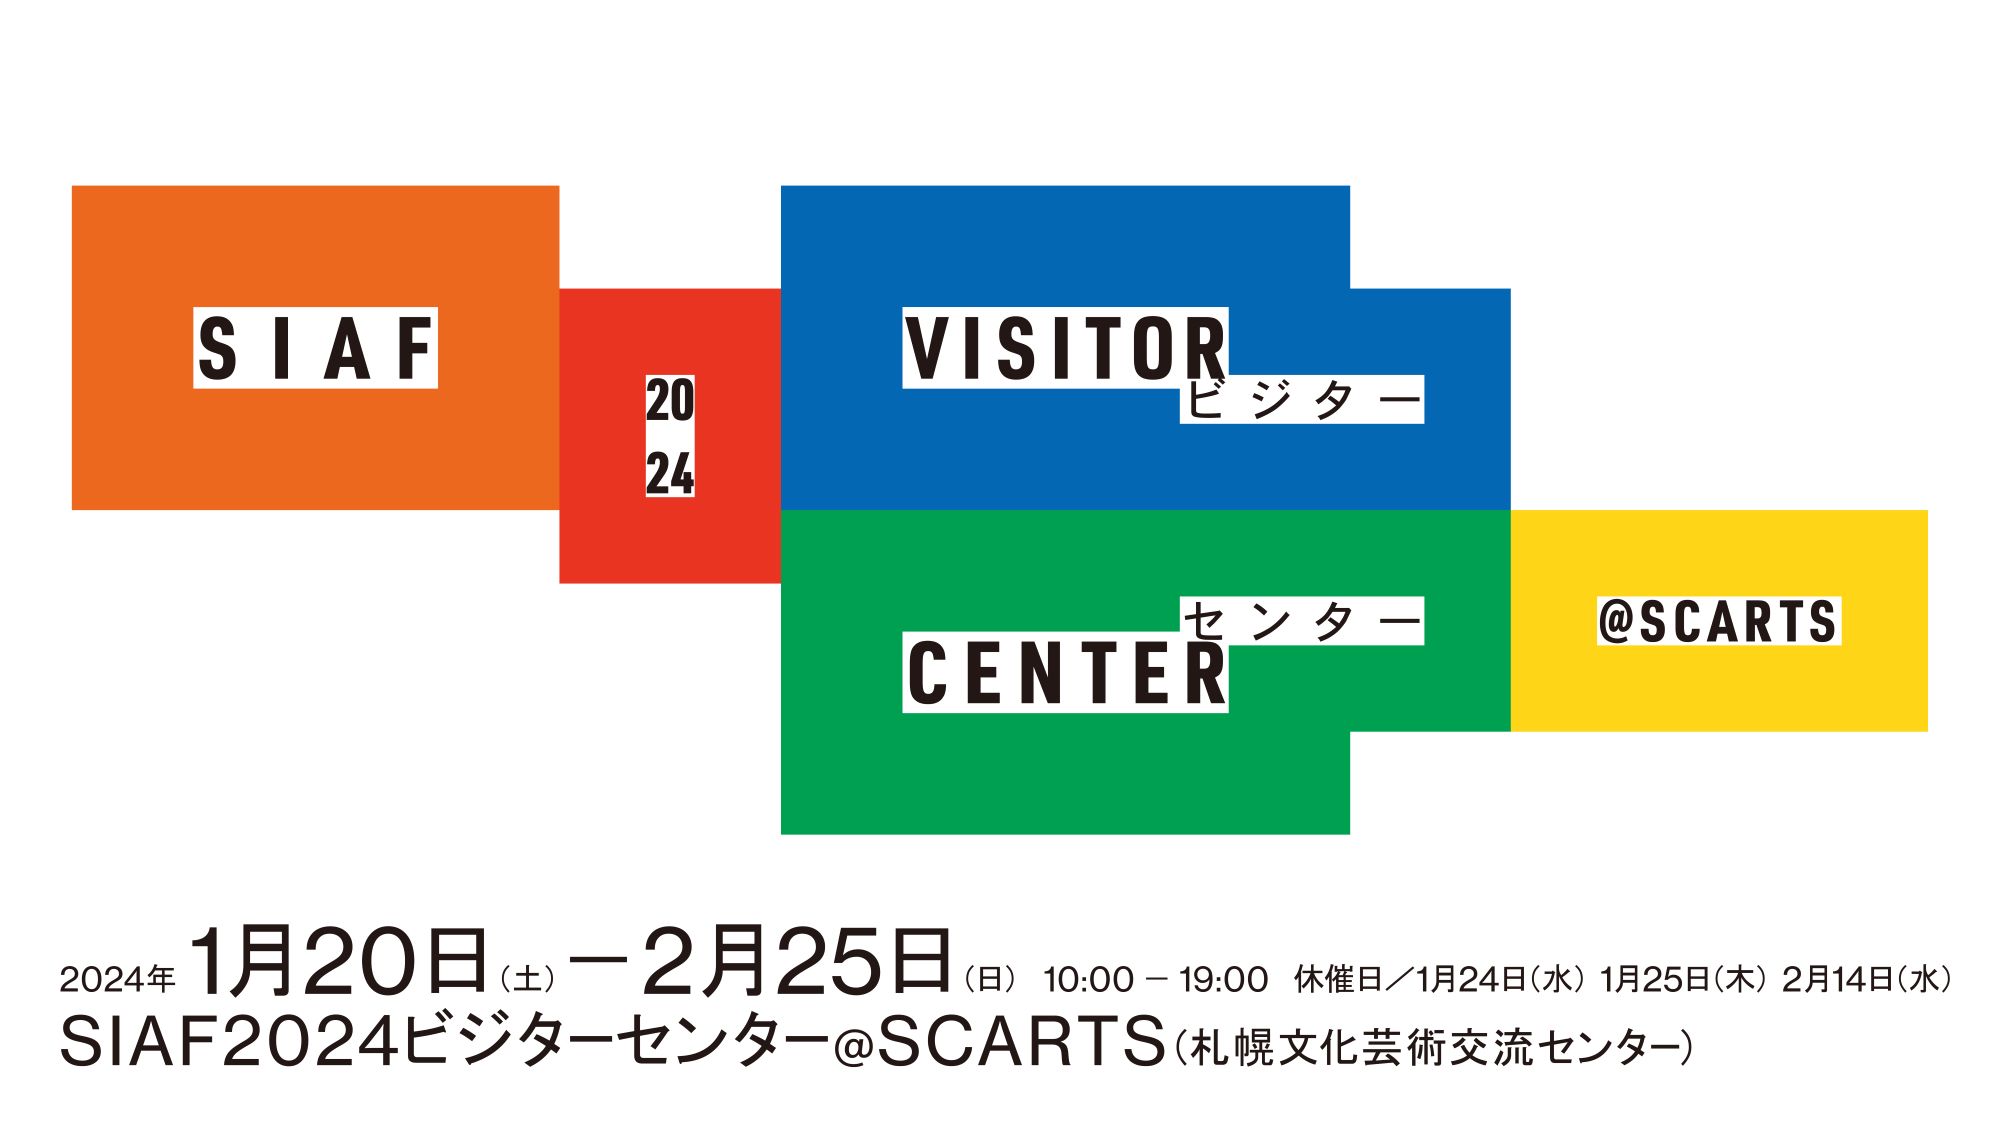 札幌国際芸術祭2024 SIAF2024 ビジターセンター @ SCARTSイメージ